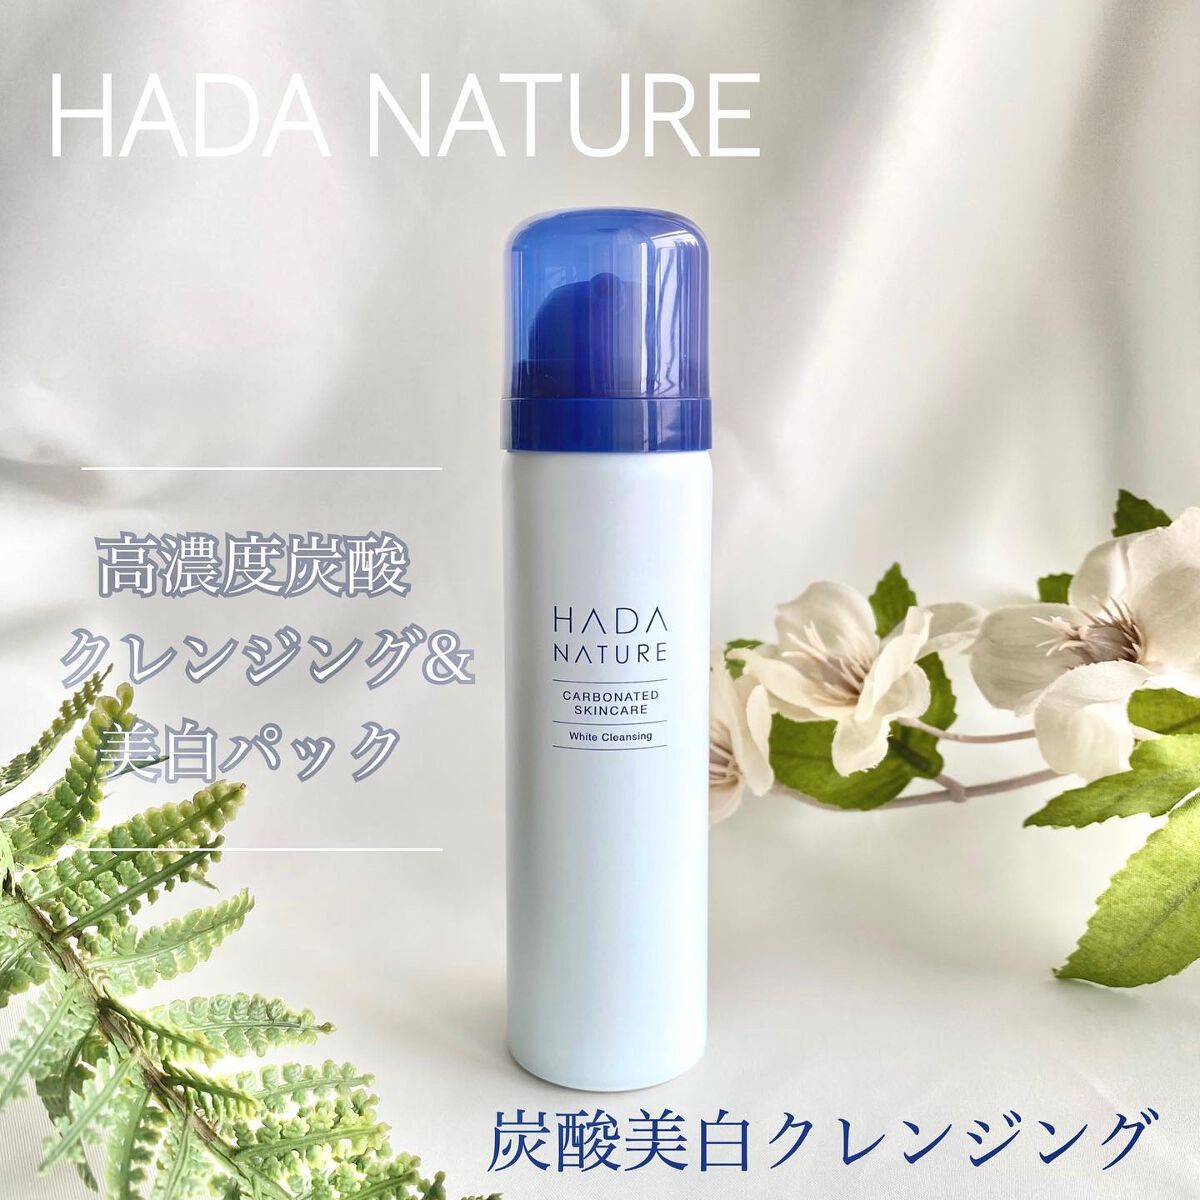 【3個セット】HADA NATURE [肌ナチュール] ホワイトクレンジング